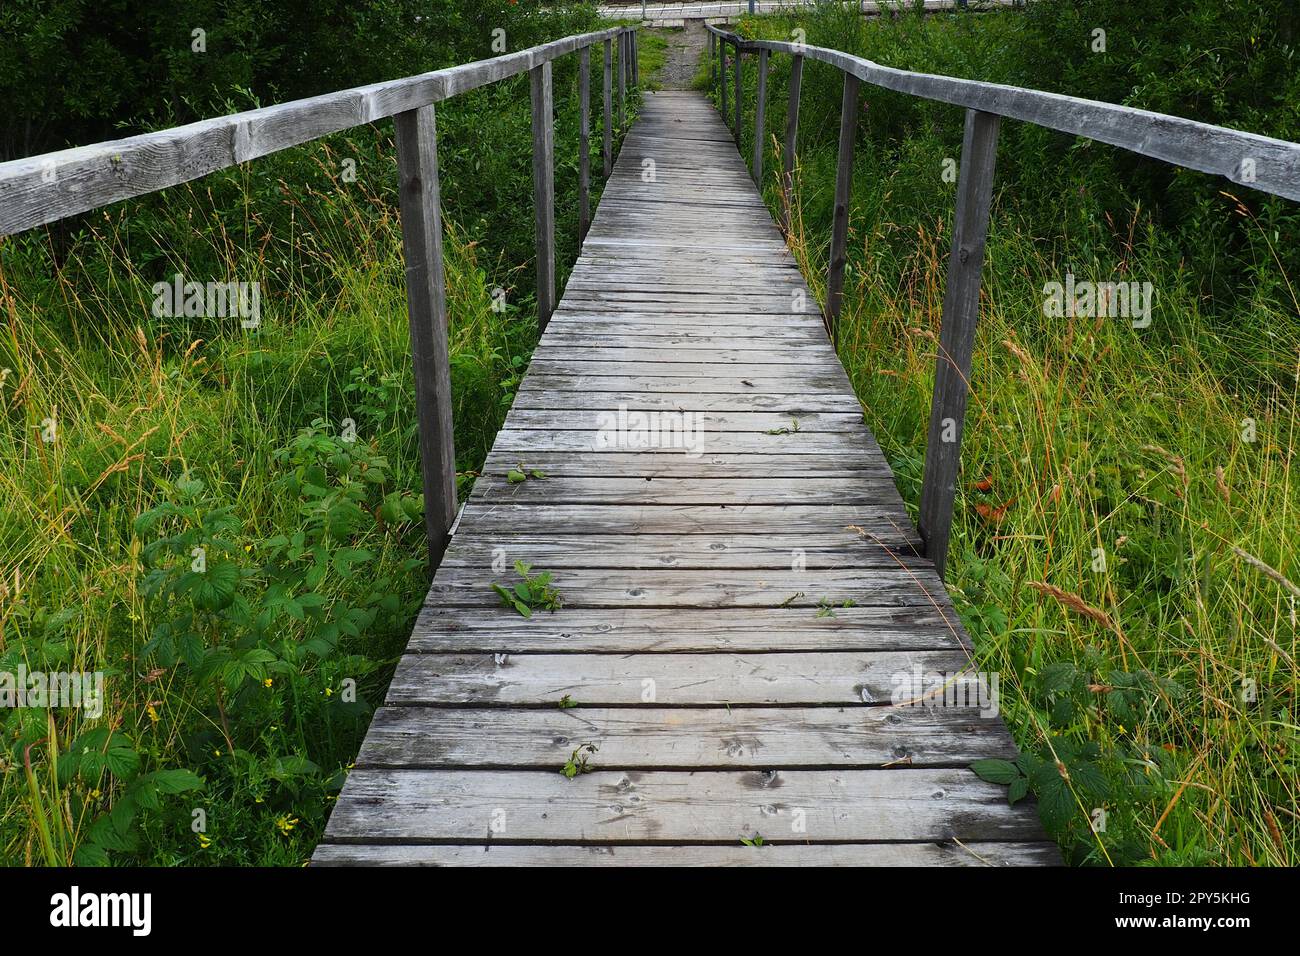 Eine alte hölzerne Hängebrücke über einem sumpfigen Graben mit hohem grünen Gras. Weg ins Nirgendwo. Ein verlassener Ort. Wandern in der Natur. Zwei lange Handläufe für mehr Sicherheit. Station Nyrki, Karelien. Bewölkter Abend. Stockfoto